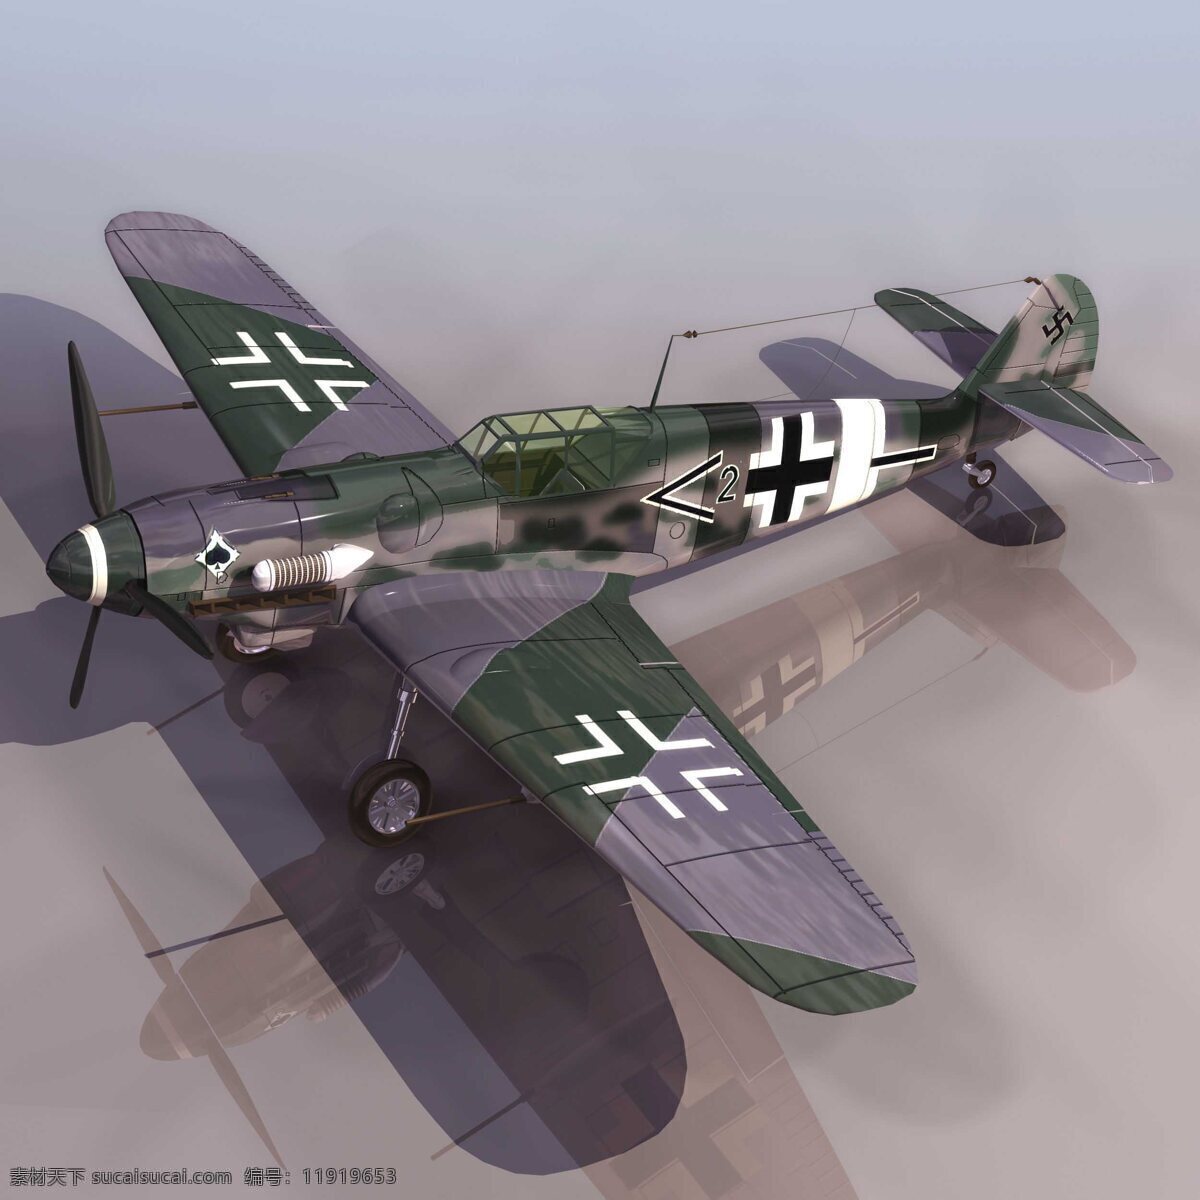 纳粹免费下载 军事模型 战斗机 纳粹 bf109g 空军武器库 3d模型素材 其他3d模型